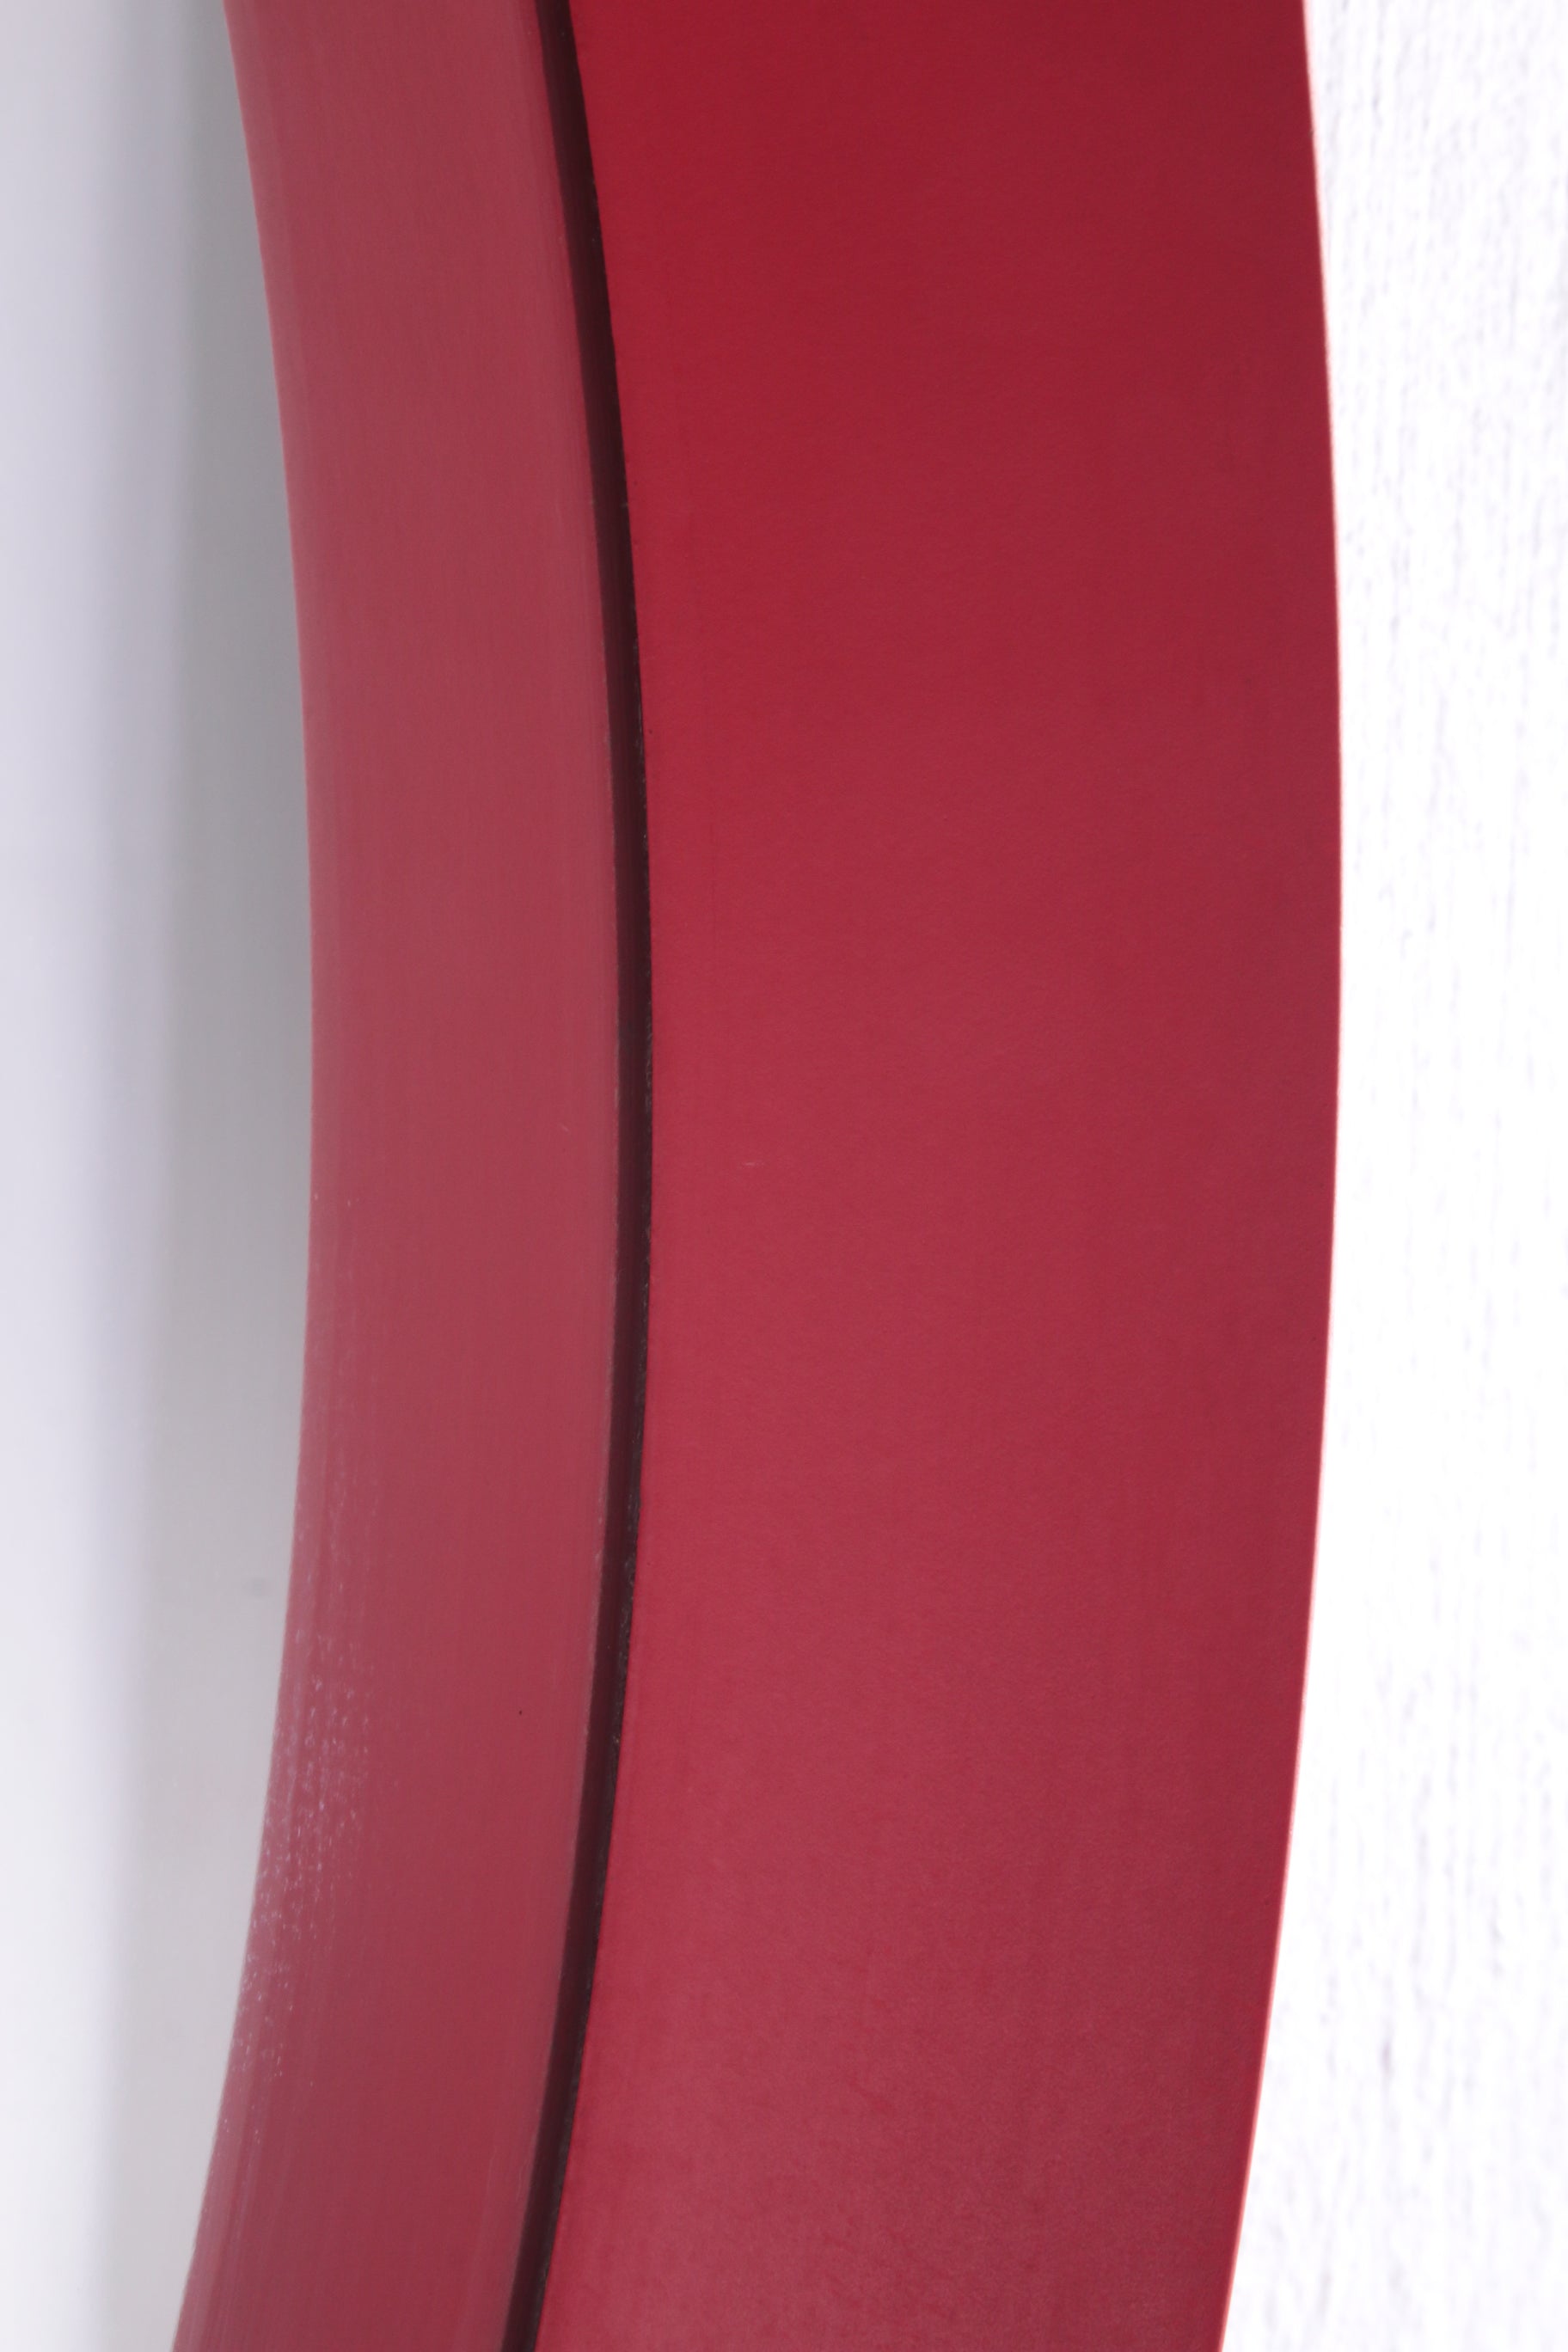 Vintage rode ronde kunststof spiegel uit de jaren60. detail zijkant rand binnen